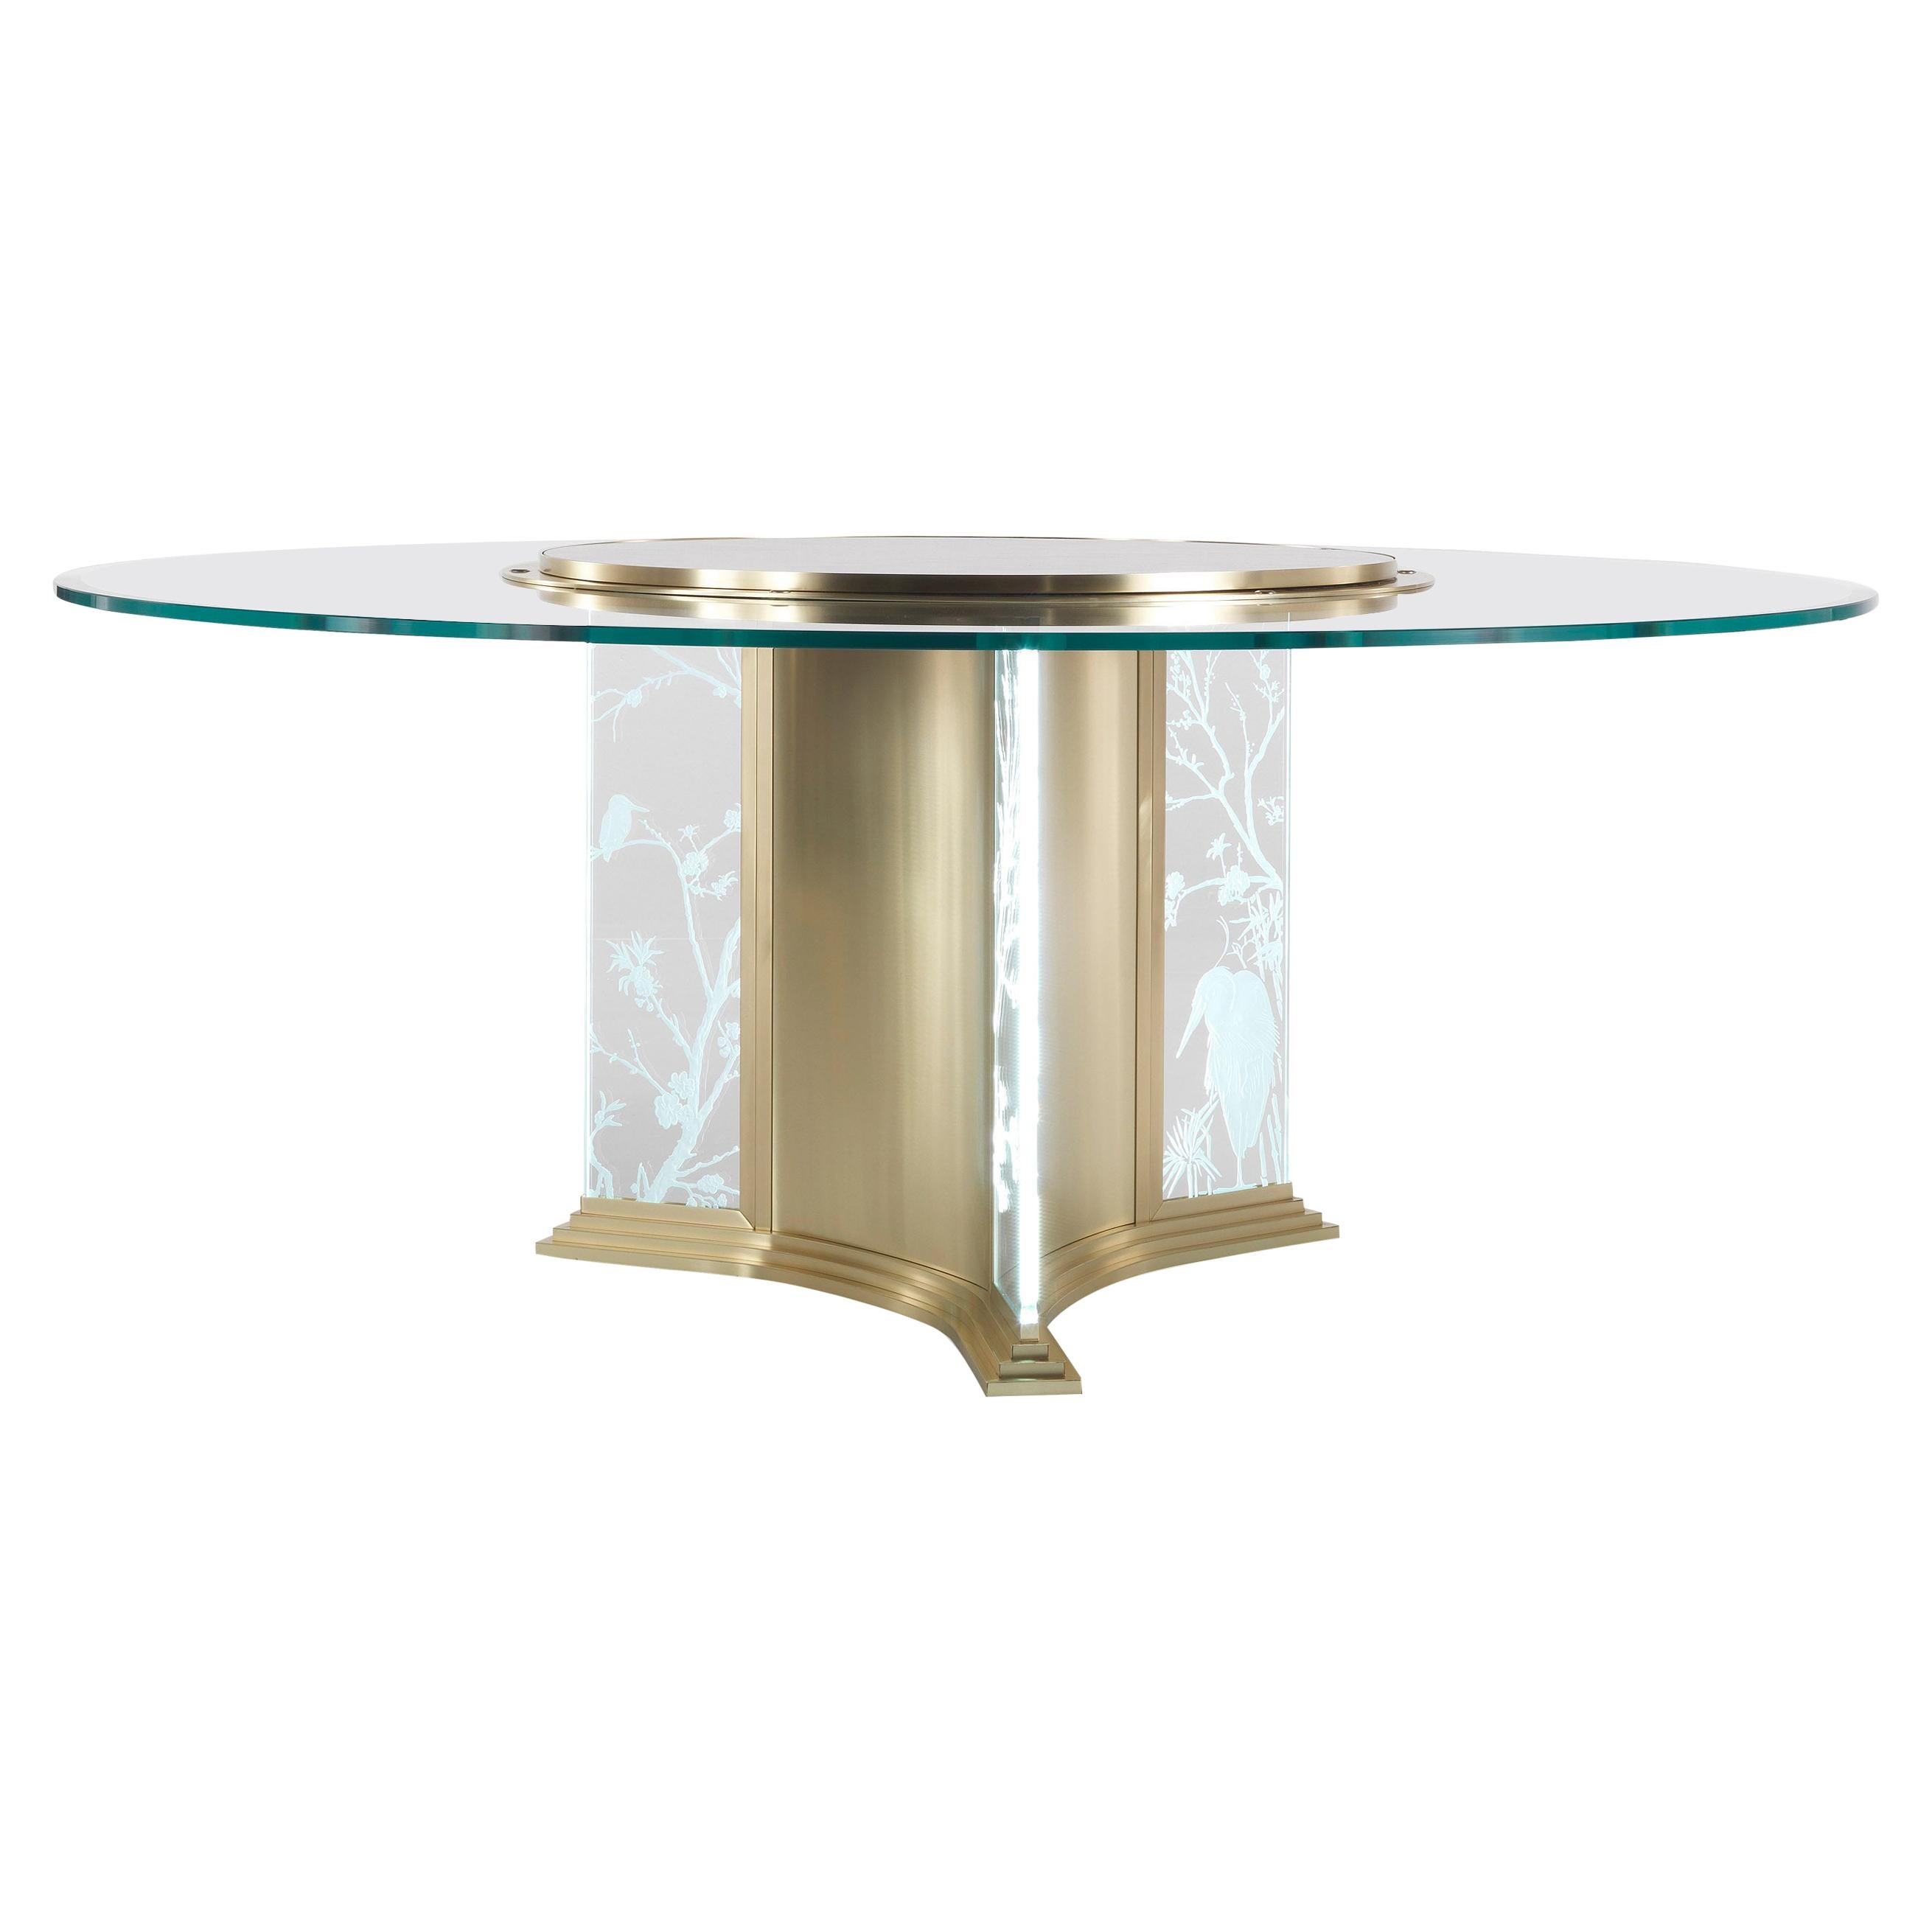 Table de salle à manger ronde Fuji du 21e siècle en métal et verre avec décoration orientale